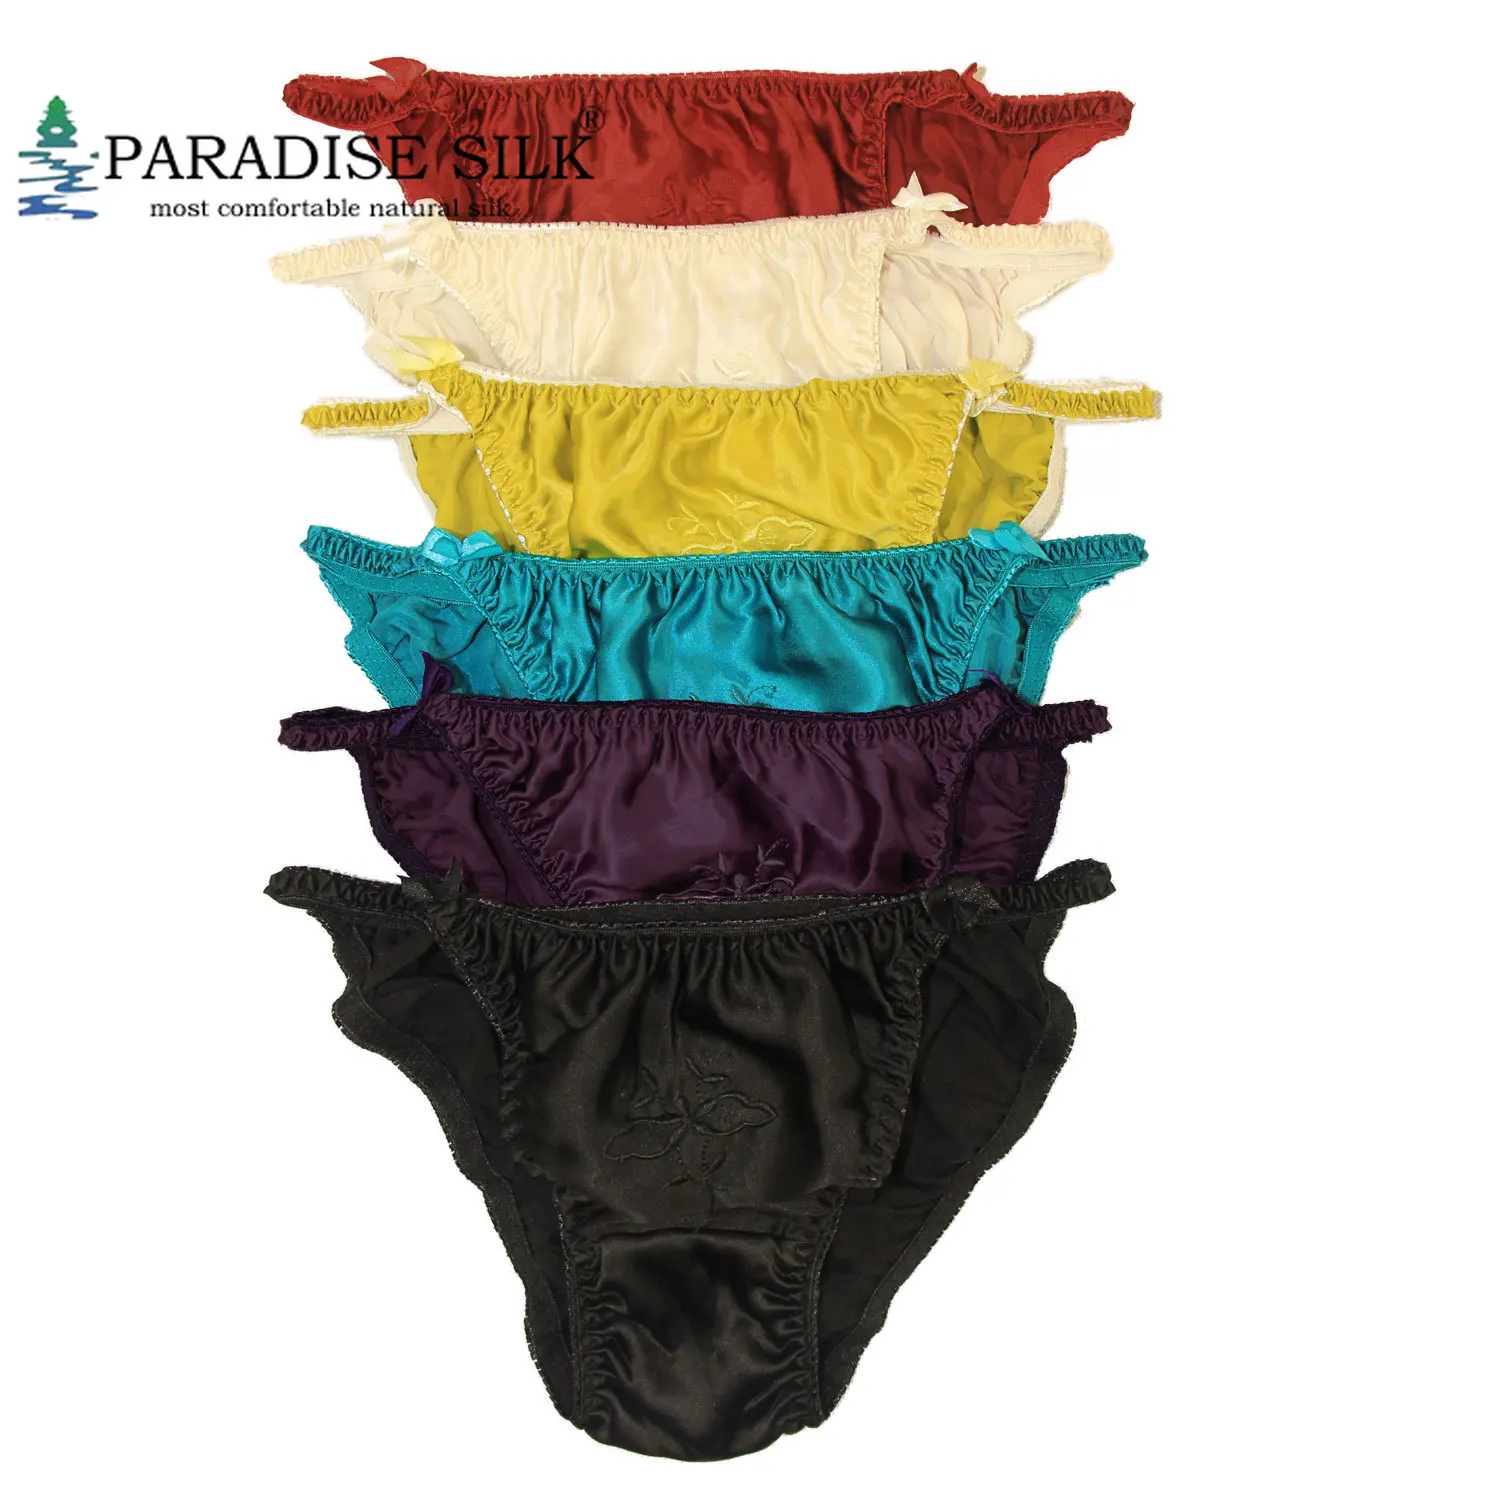 Buy Lingerie Paradise Antibacterial Underwear for Ladies, Panties